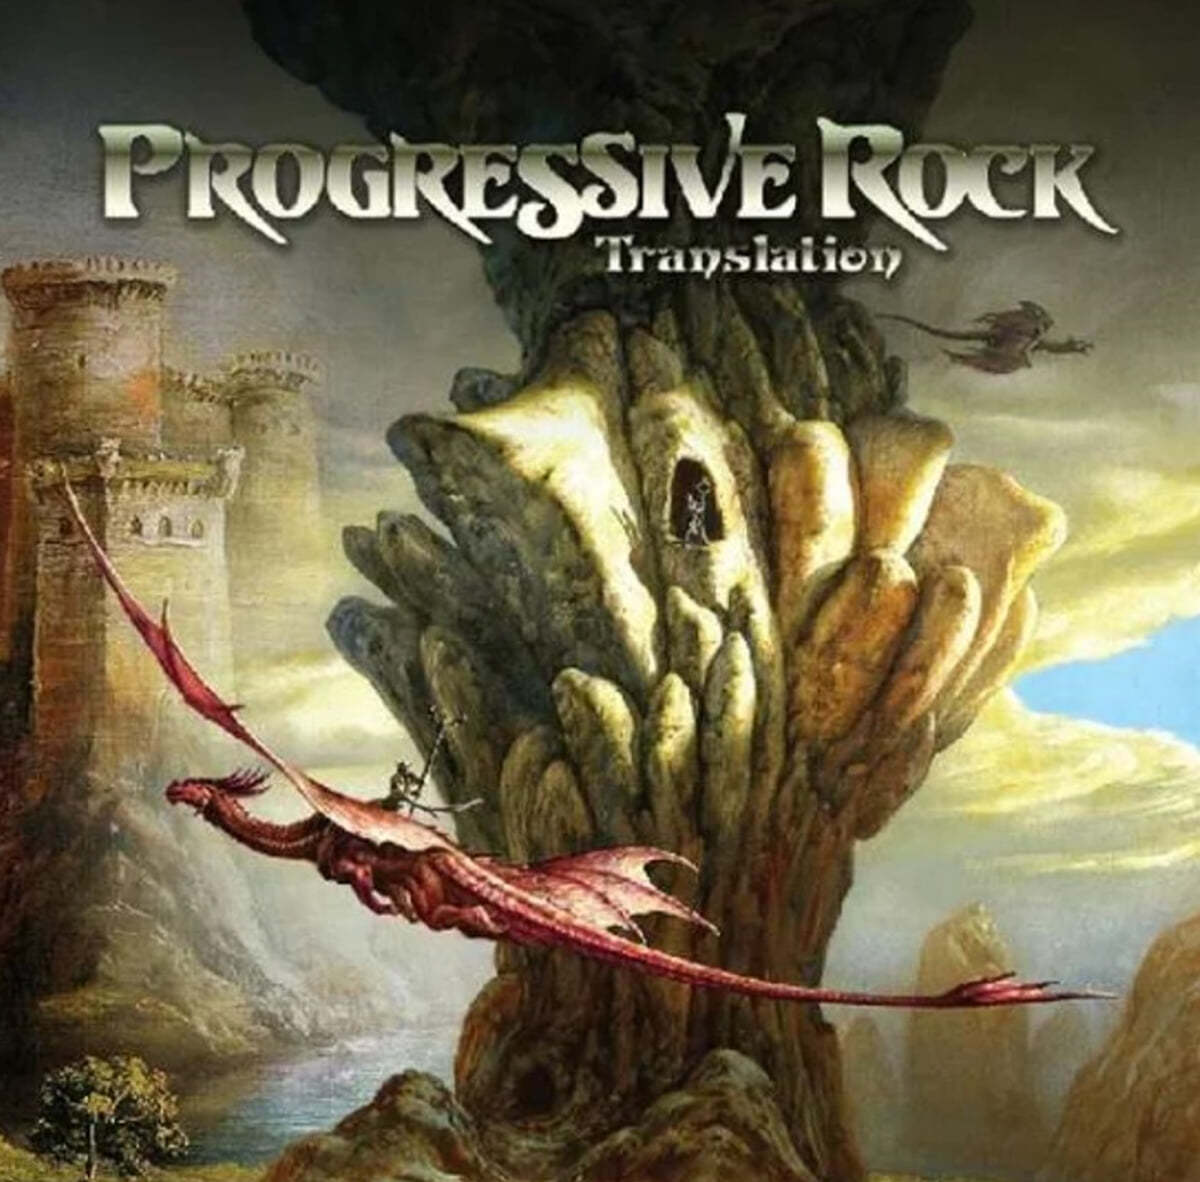 프로그레시브 록 컴필레이션 (Progressive Rock) [투명 컬러 2LP]